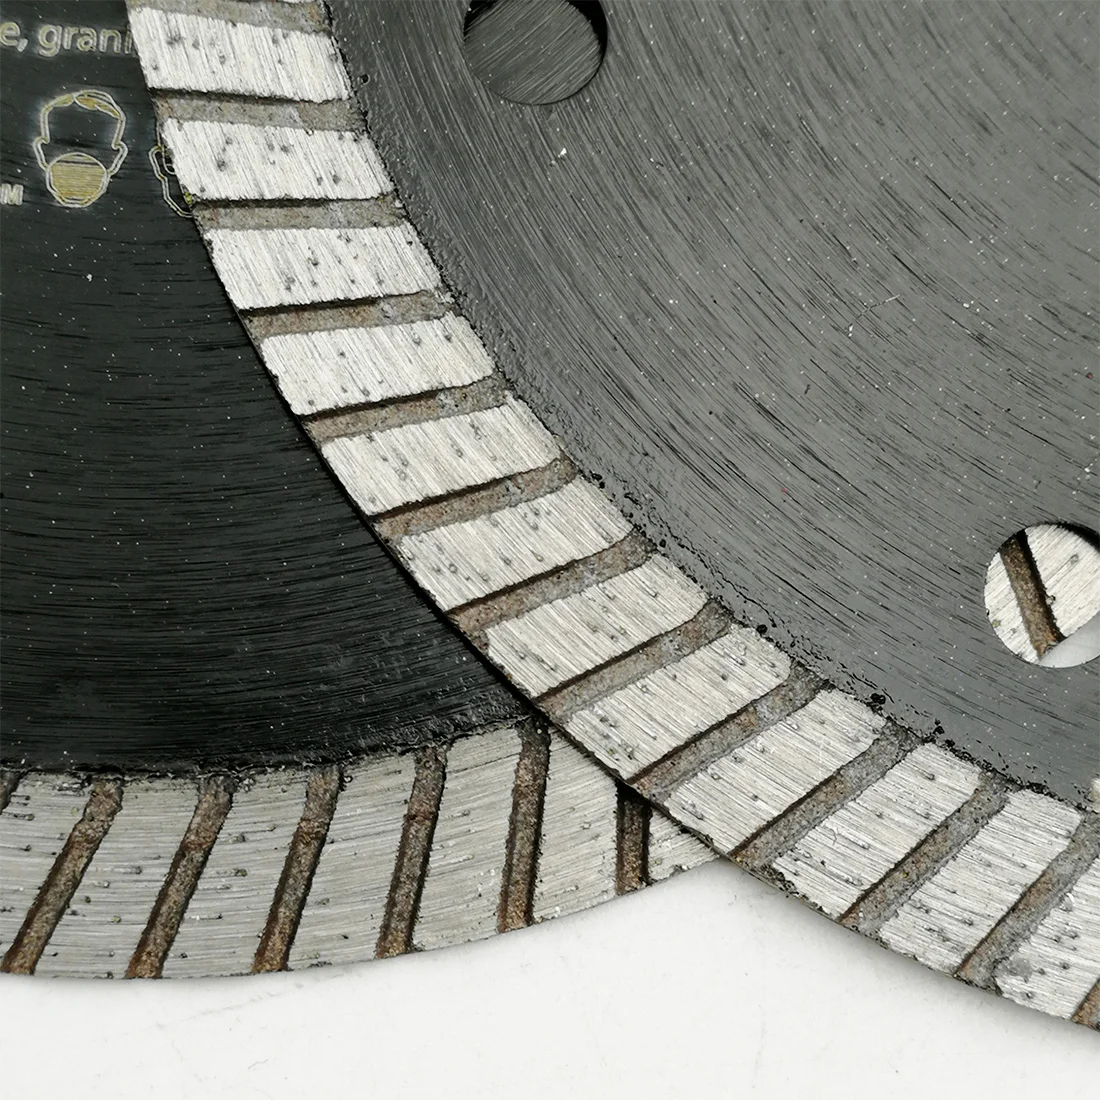 DT-DIATOOL 5 шт. алмазные сверхтонкие режущие диски для плитки, турбо-лезвия для твердого материала, фарфоровой керамической плитки, диаметр 115 мм... от AliExpress RU&CIS NEW